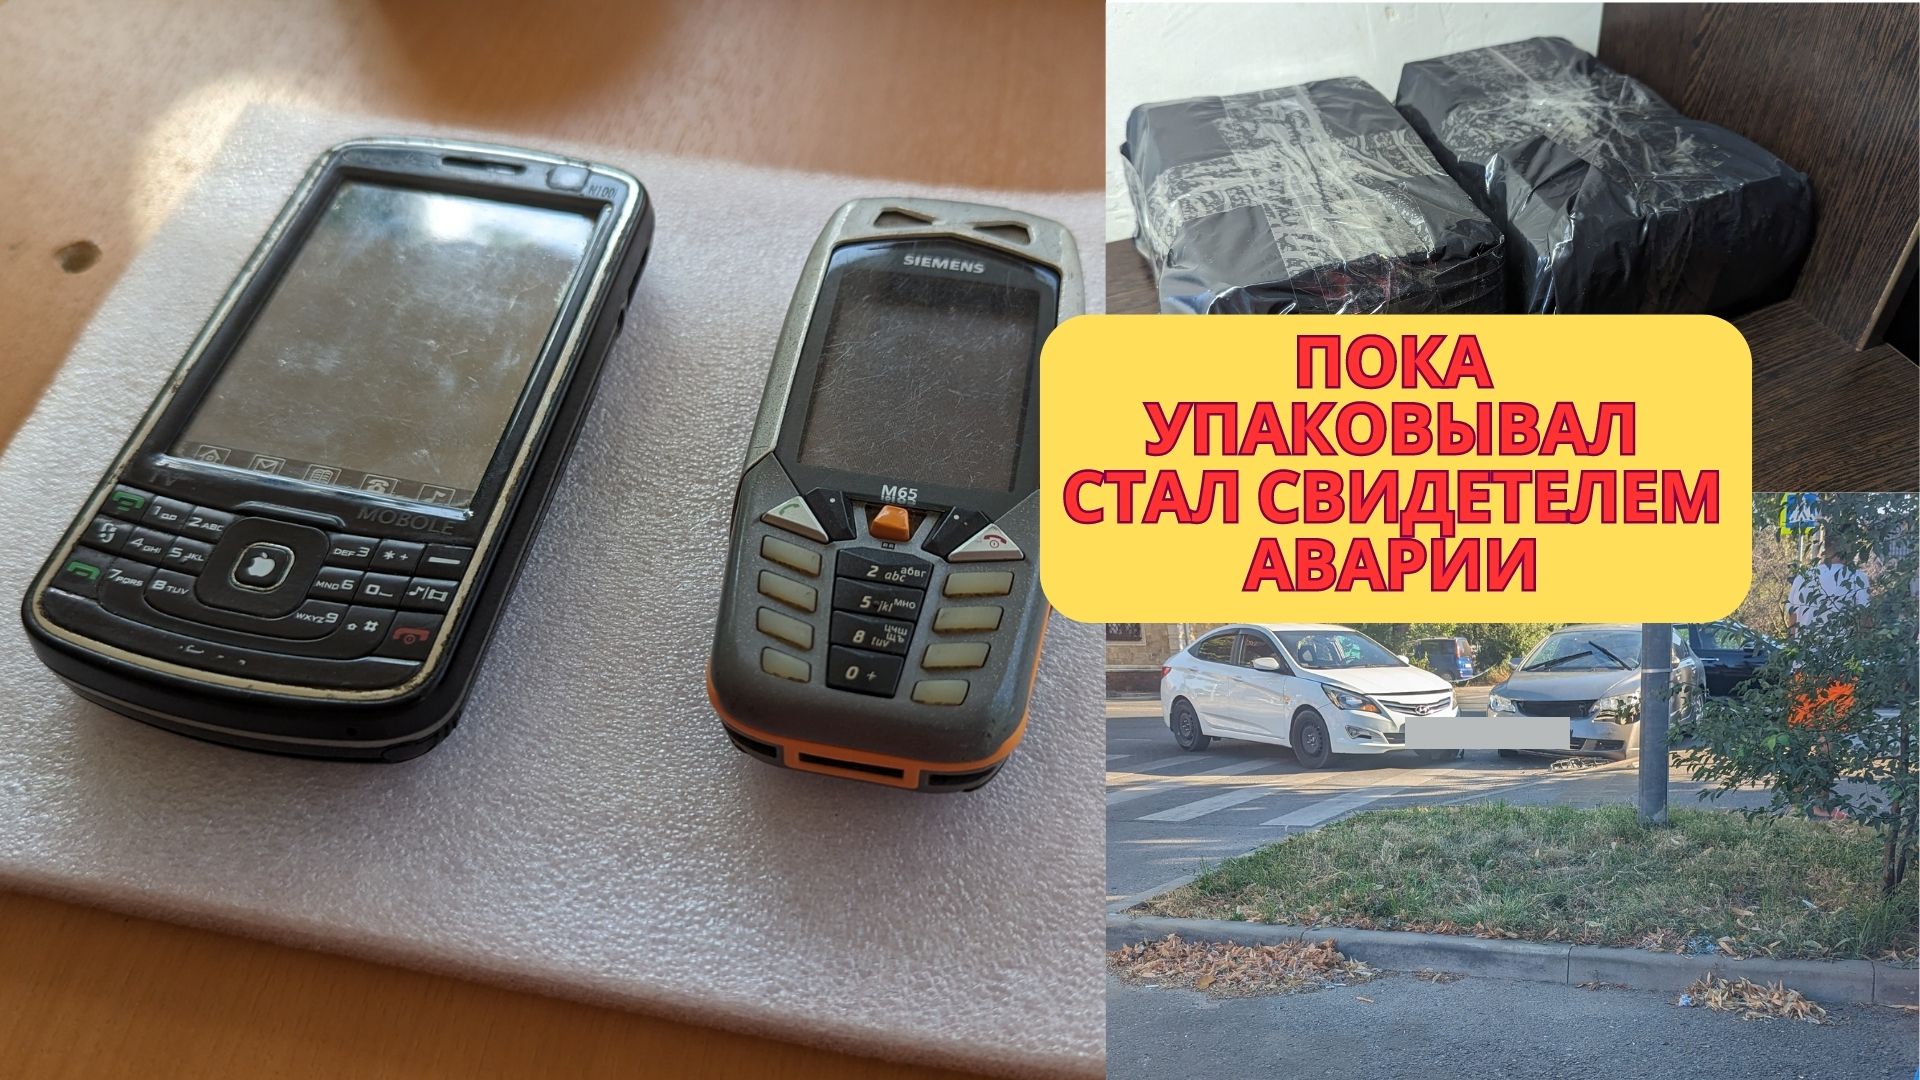 Надежная УПАКОВКА двух ретро телефонов на отправку ПОЧТОЙ без затрат